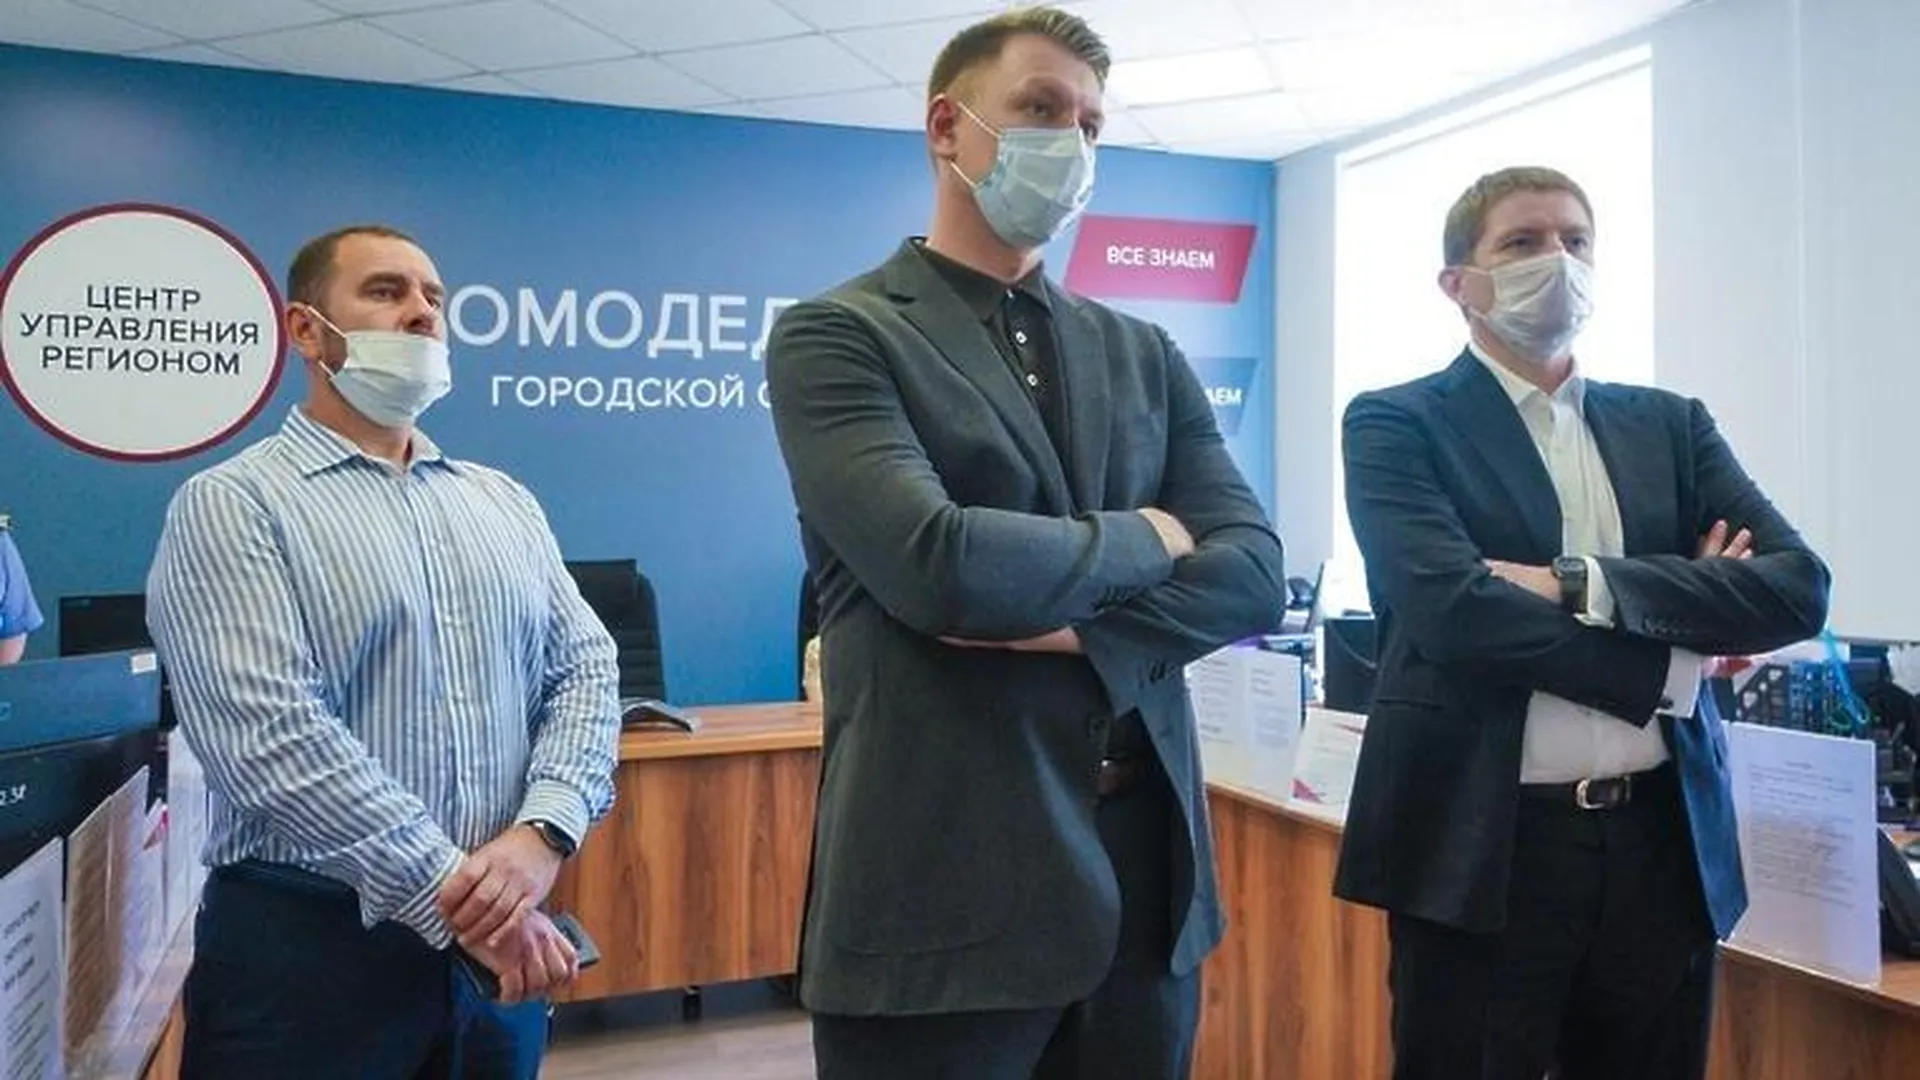 Зампред правительства Подмосковья проверил, как работает ЦУР в Домодедове